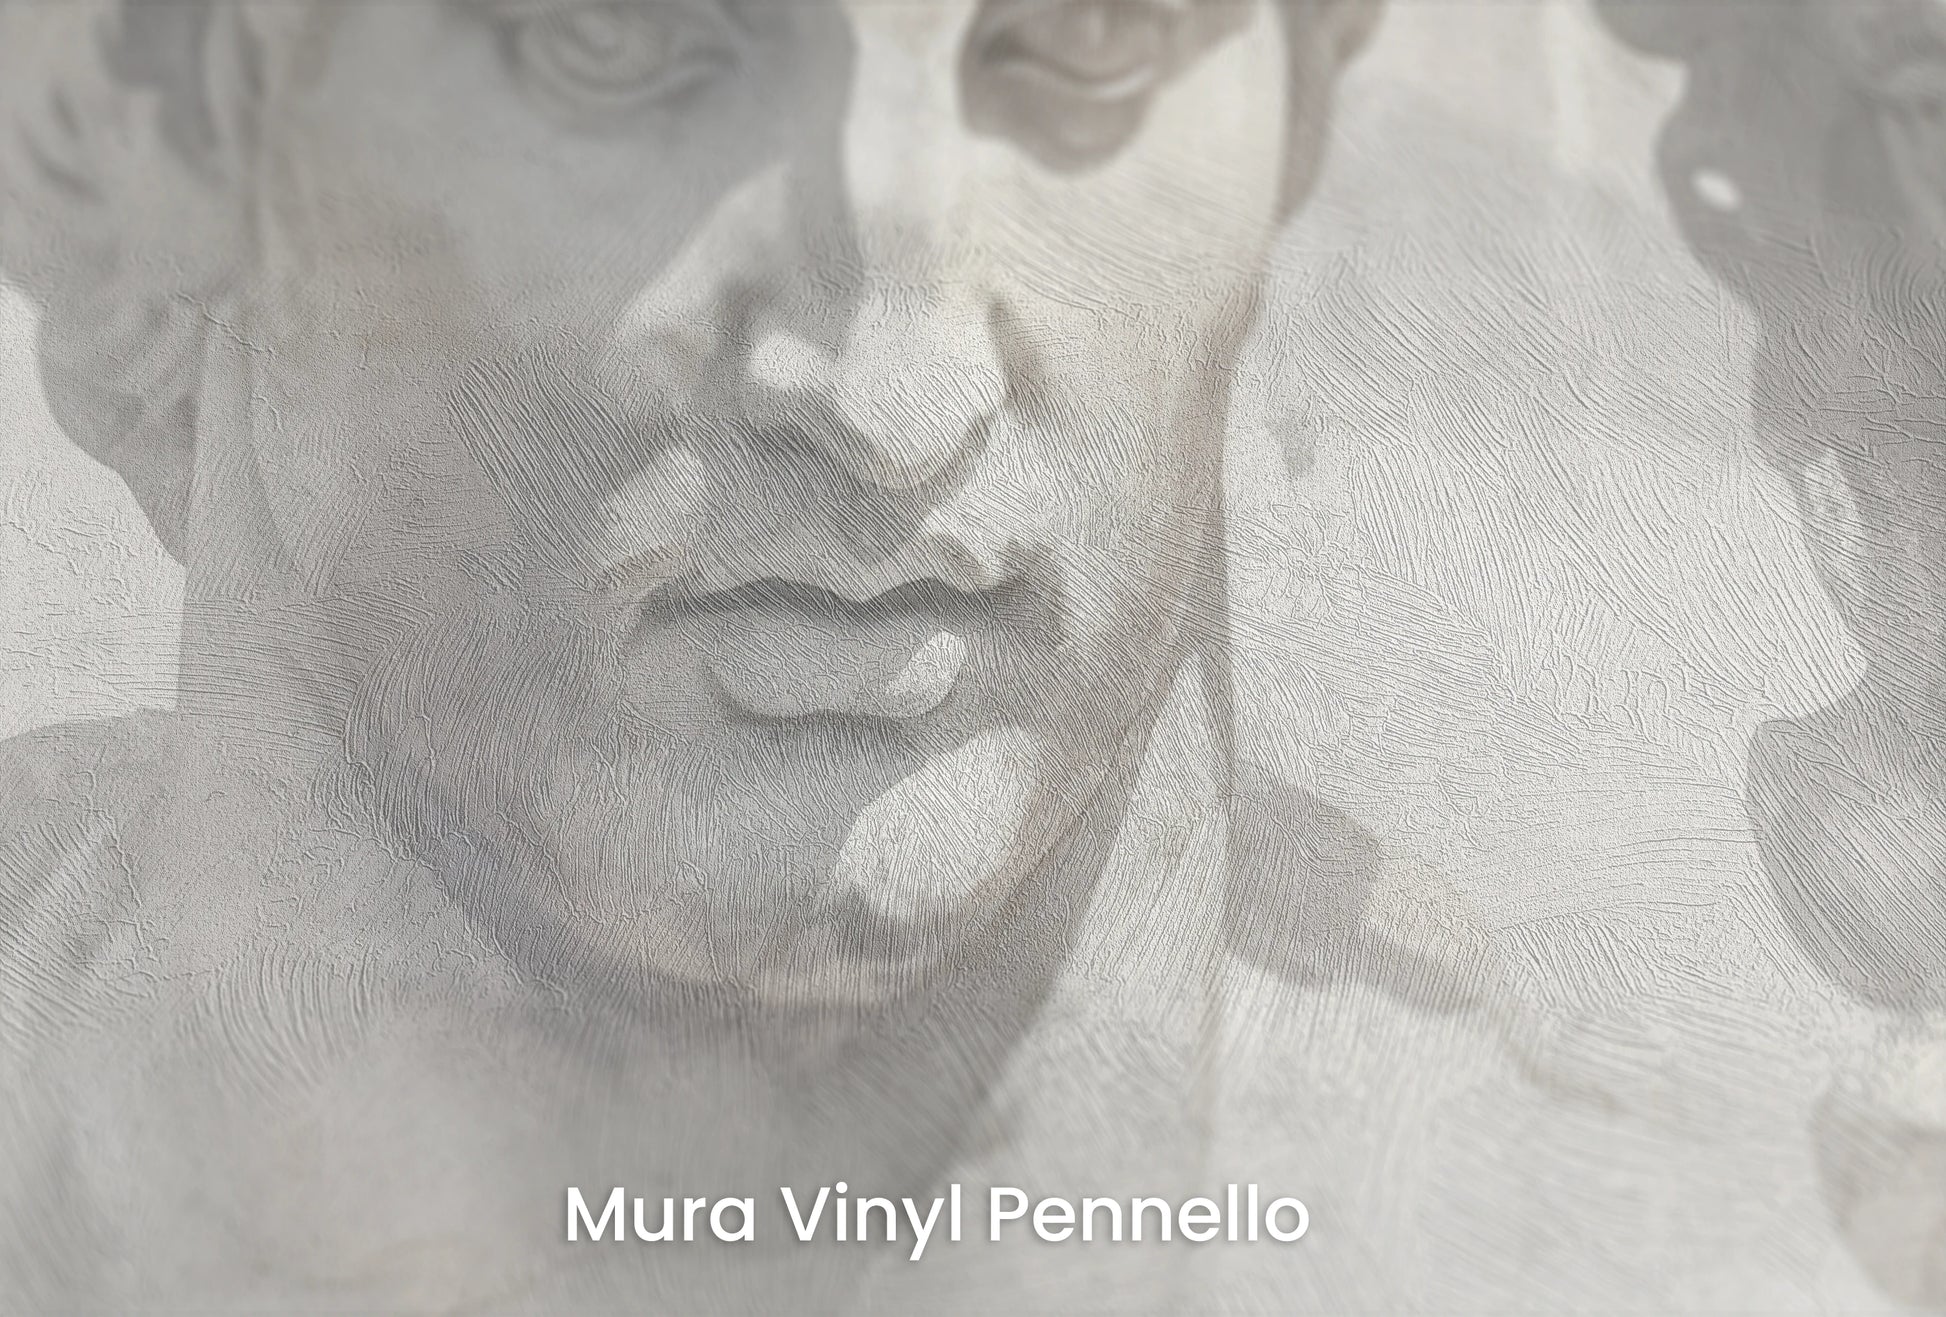 Zbliżenie na artystyczną fototapetę o nazwie Greek Tragedy na podłożu Mura Vinyl Pennello - faktura pociągnięć pędzla malarskiego.